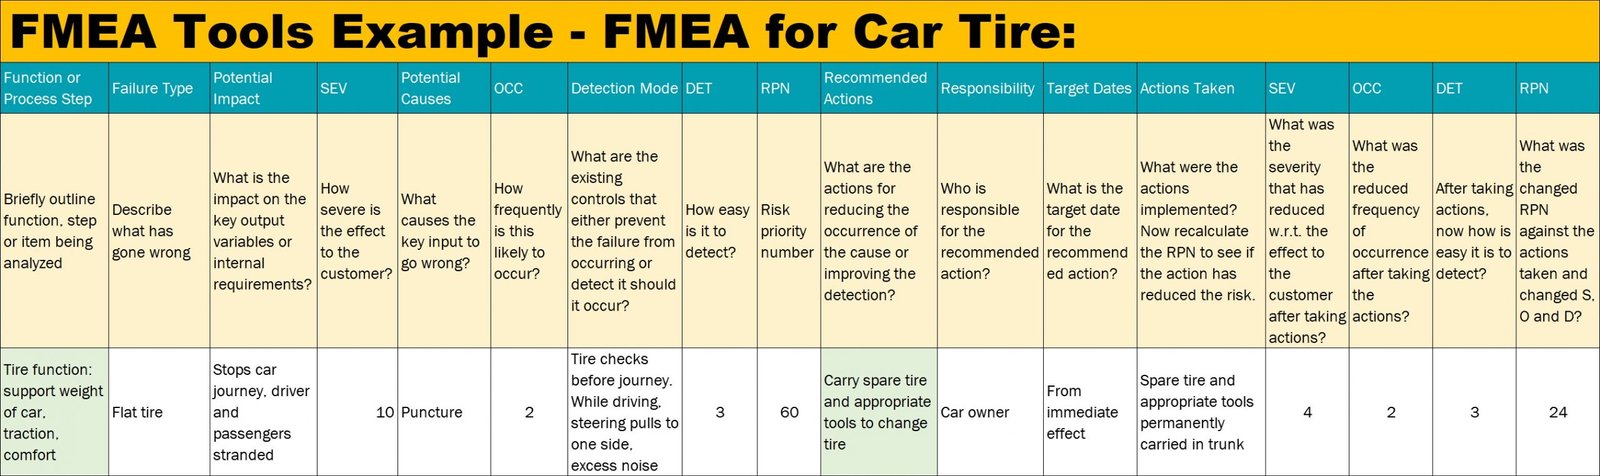 FMEA_tools_example_FMEA_for_car_tire